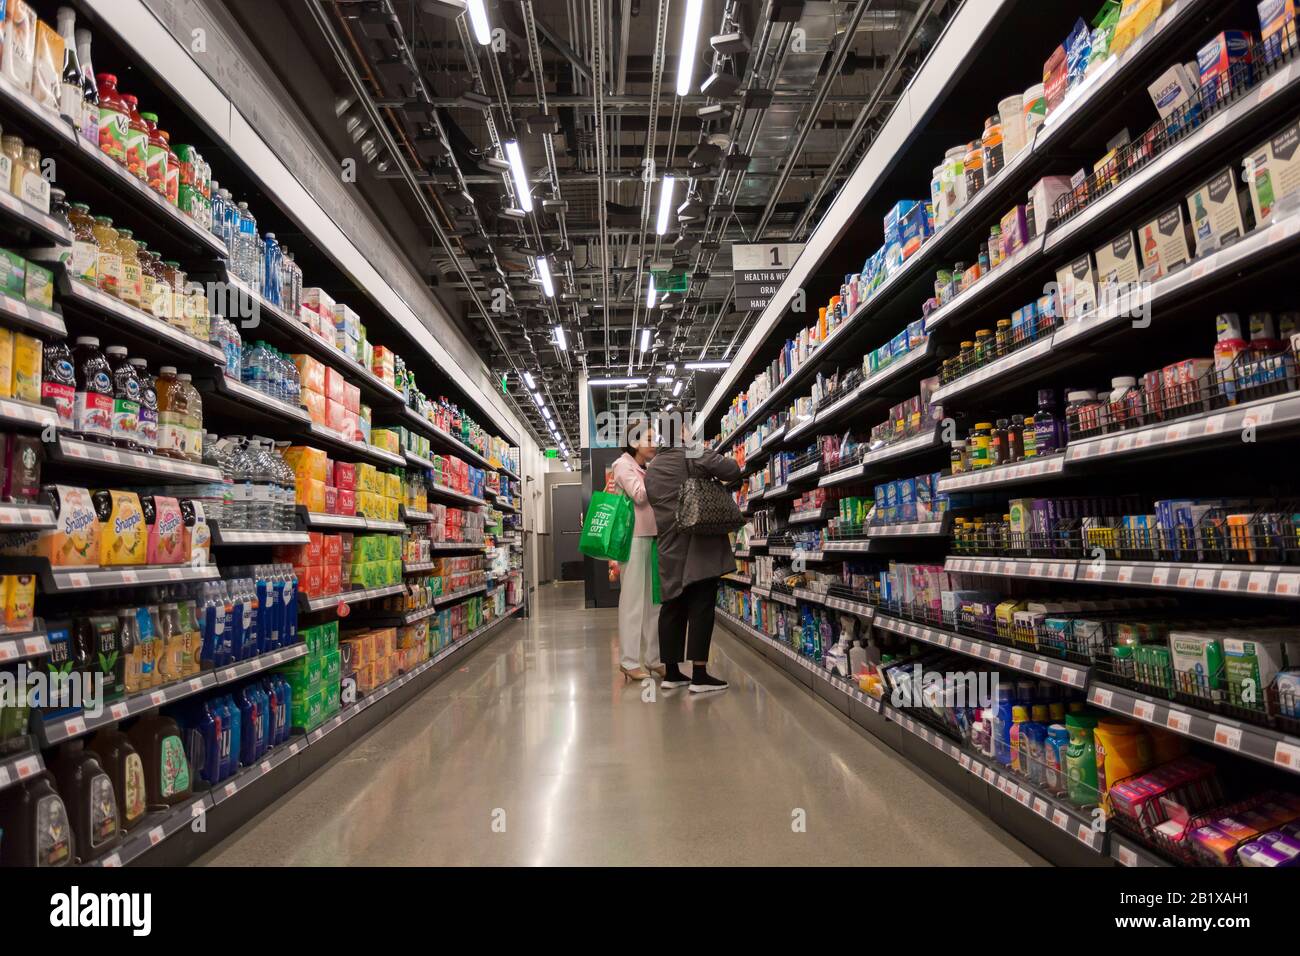 Am 27. Februar 2020 kaufen Kunden bei Amazon Go Lebensmittel ein. Der erste  große, kashierlose Supermarkt des Technikunternehmens wurde Anfang der  Woche im Viertel Capitol Hill in Seattle eröffnet. Kunden scannen eine